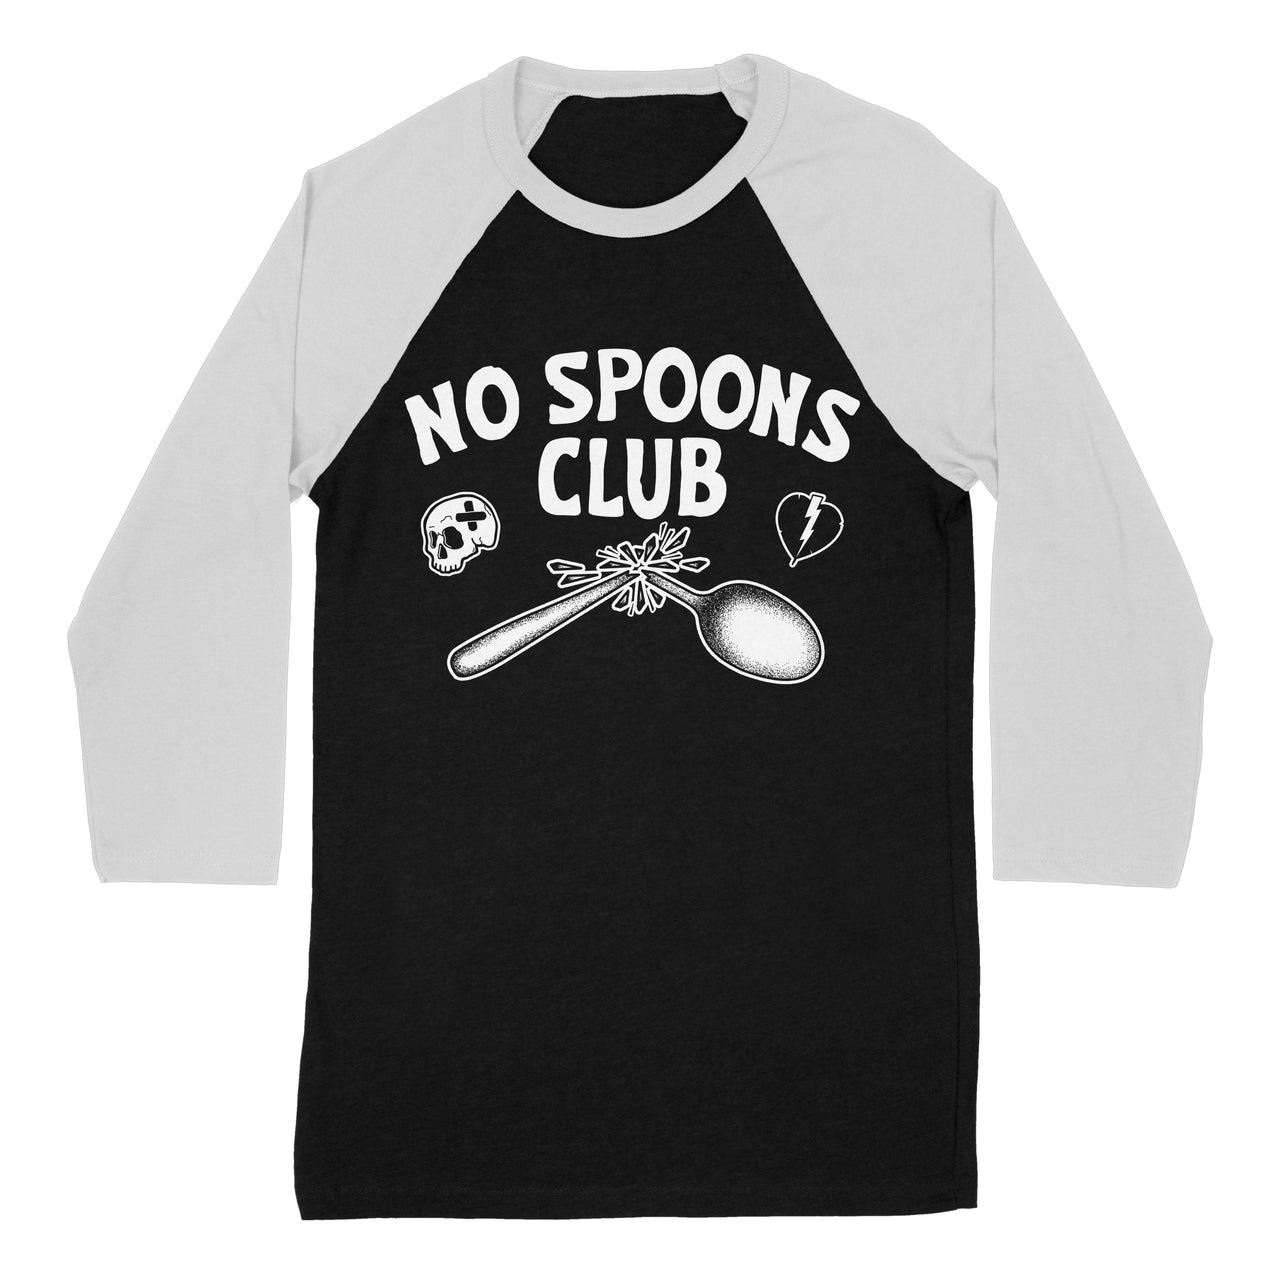 No Spoons Club 3/4 Tee